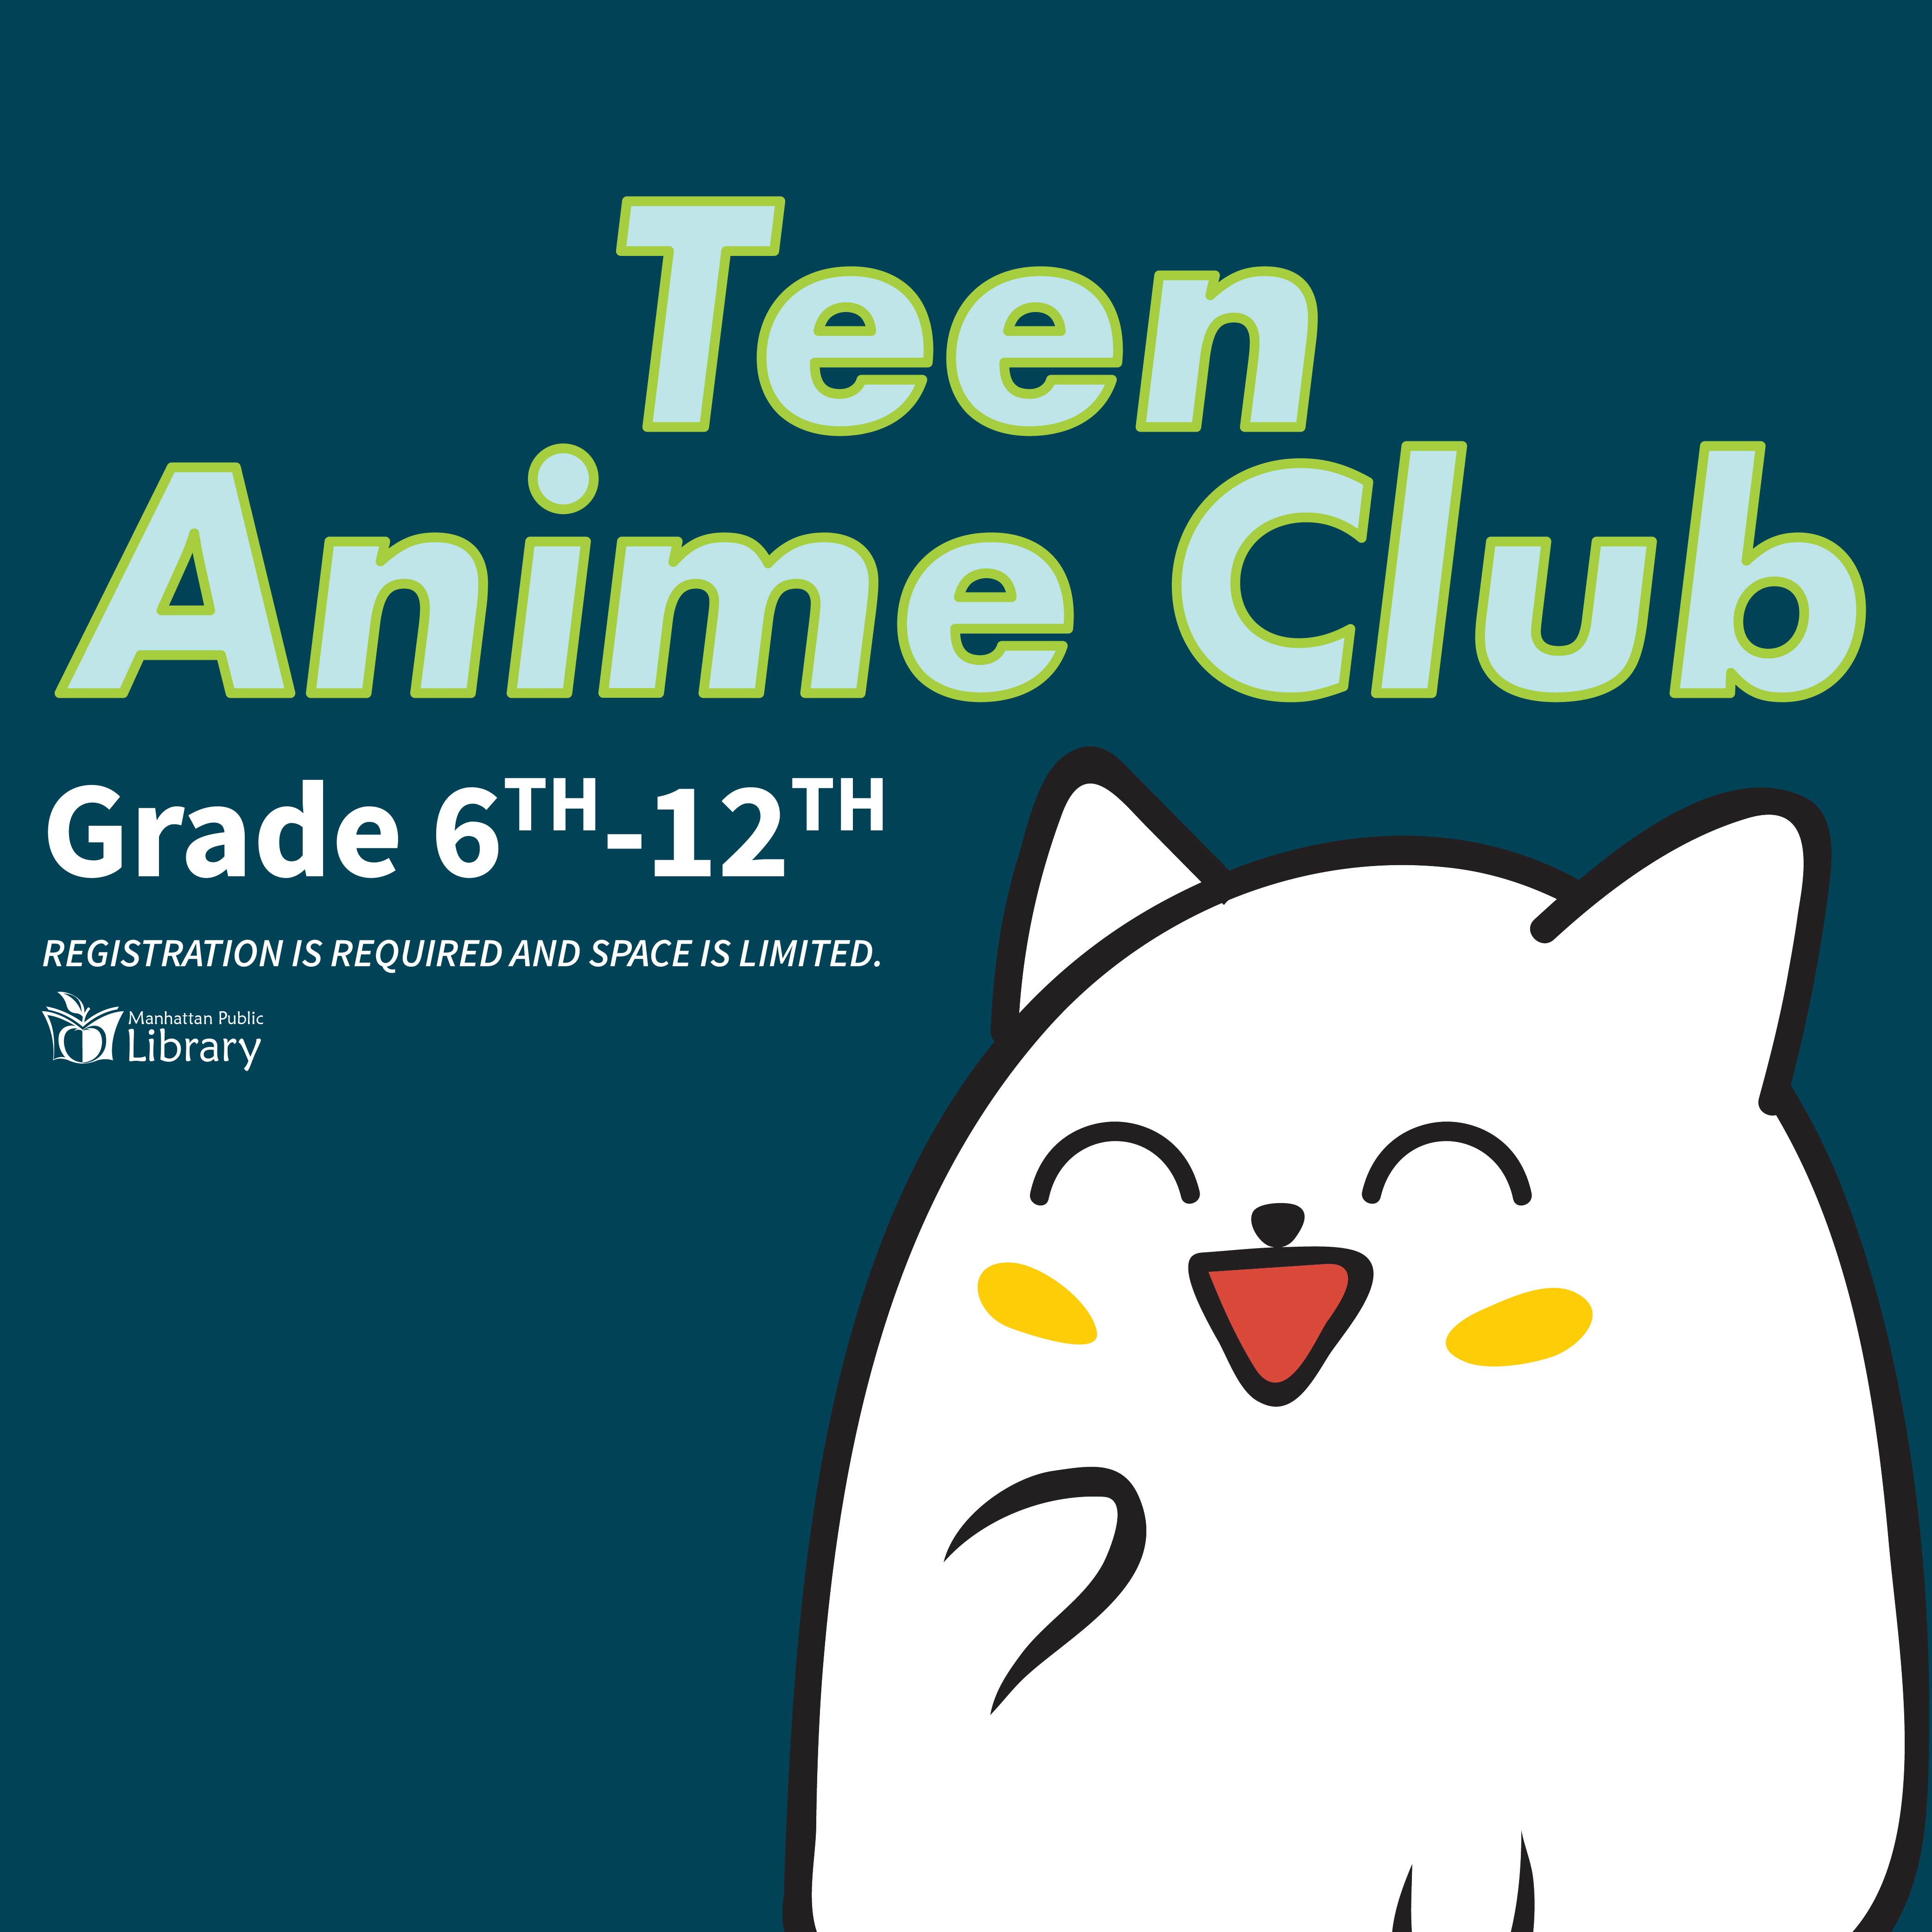 Teen Anime Club Grades 6th - 12th